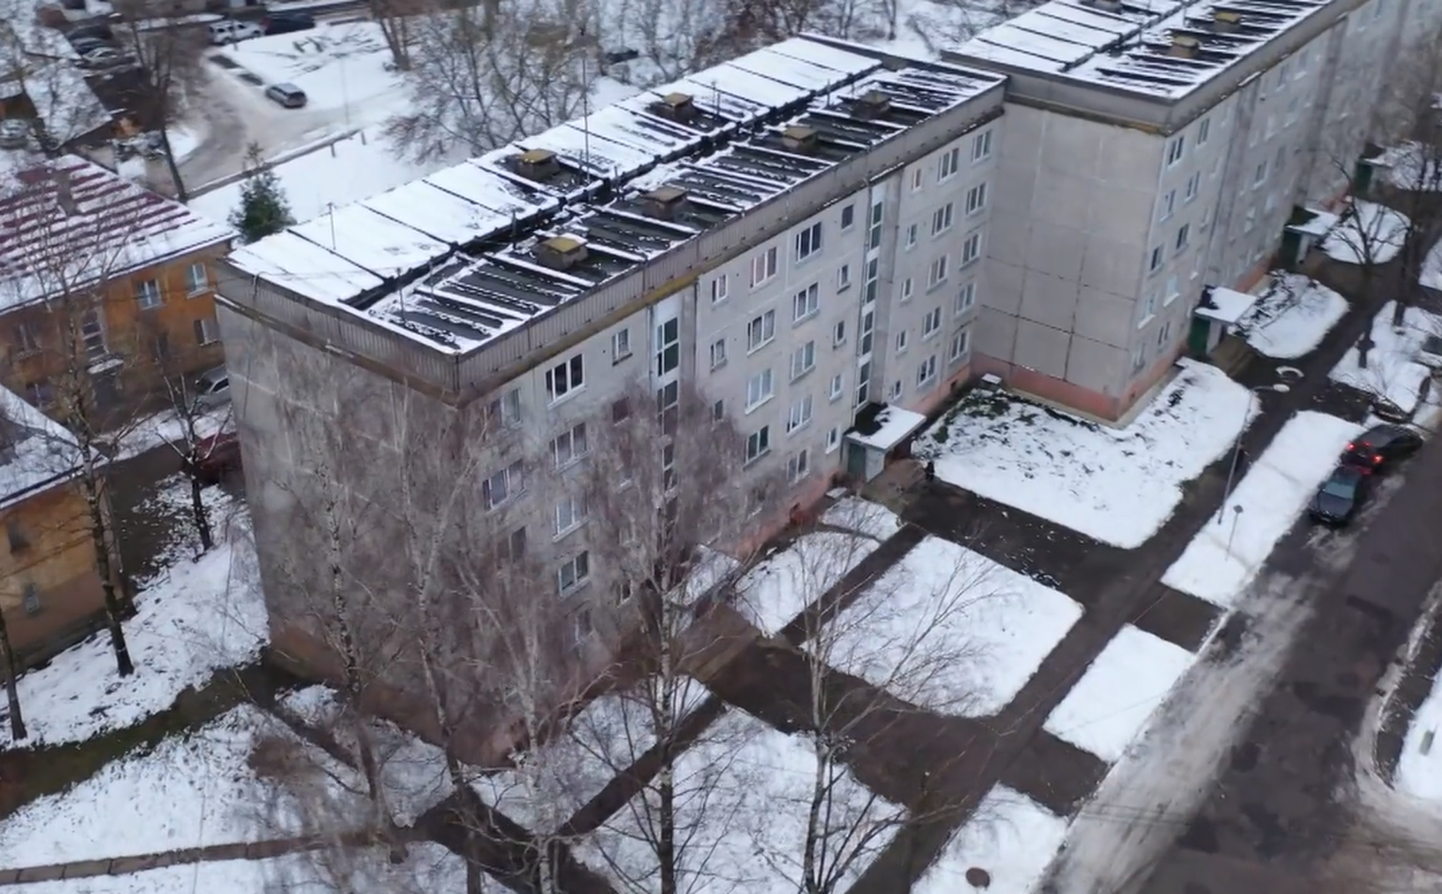 Жилой дом "литовского проекта" на улице Стурманю, 3 в Болдерае, от которого в ноябре 2022 года оторвалась панель крыши